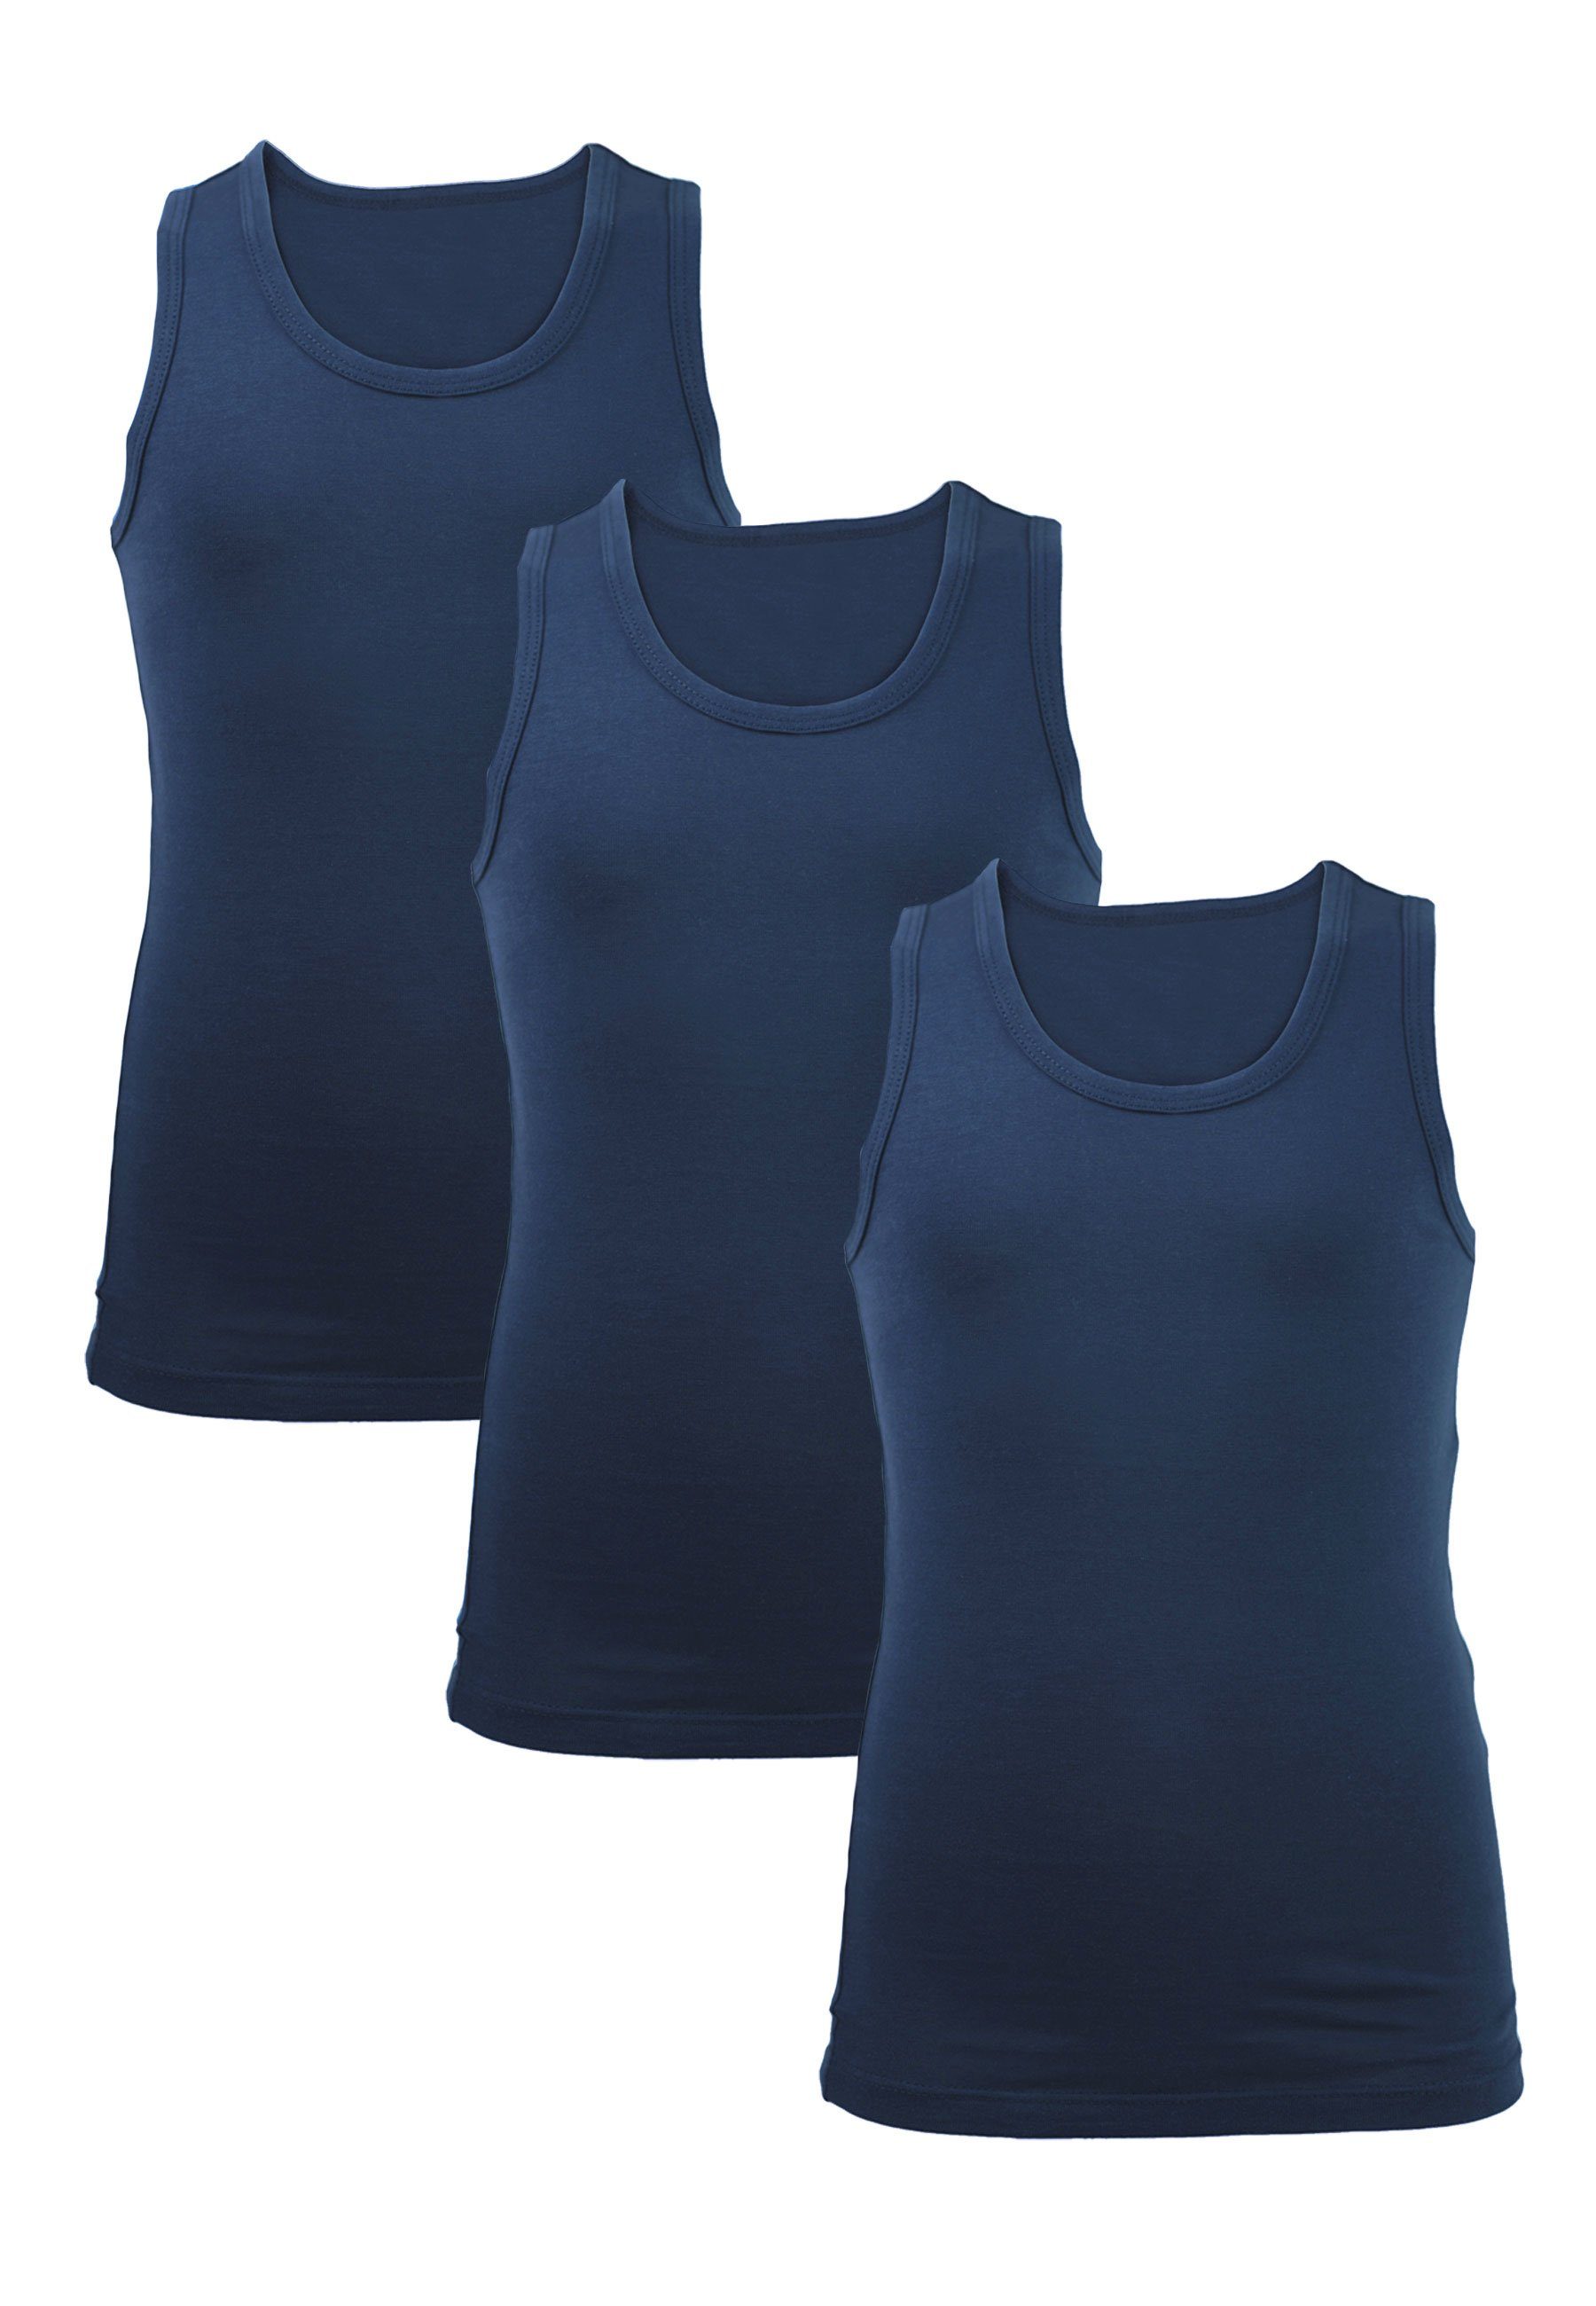 CARBURANT Unterhemd 3 Pack Unterhemden für Jungen blau (3er-Pack) aus reiner Baumwolle